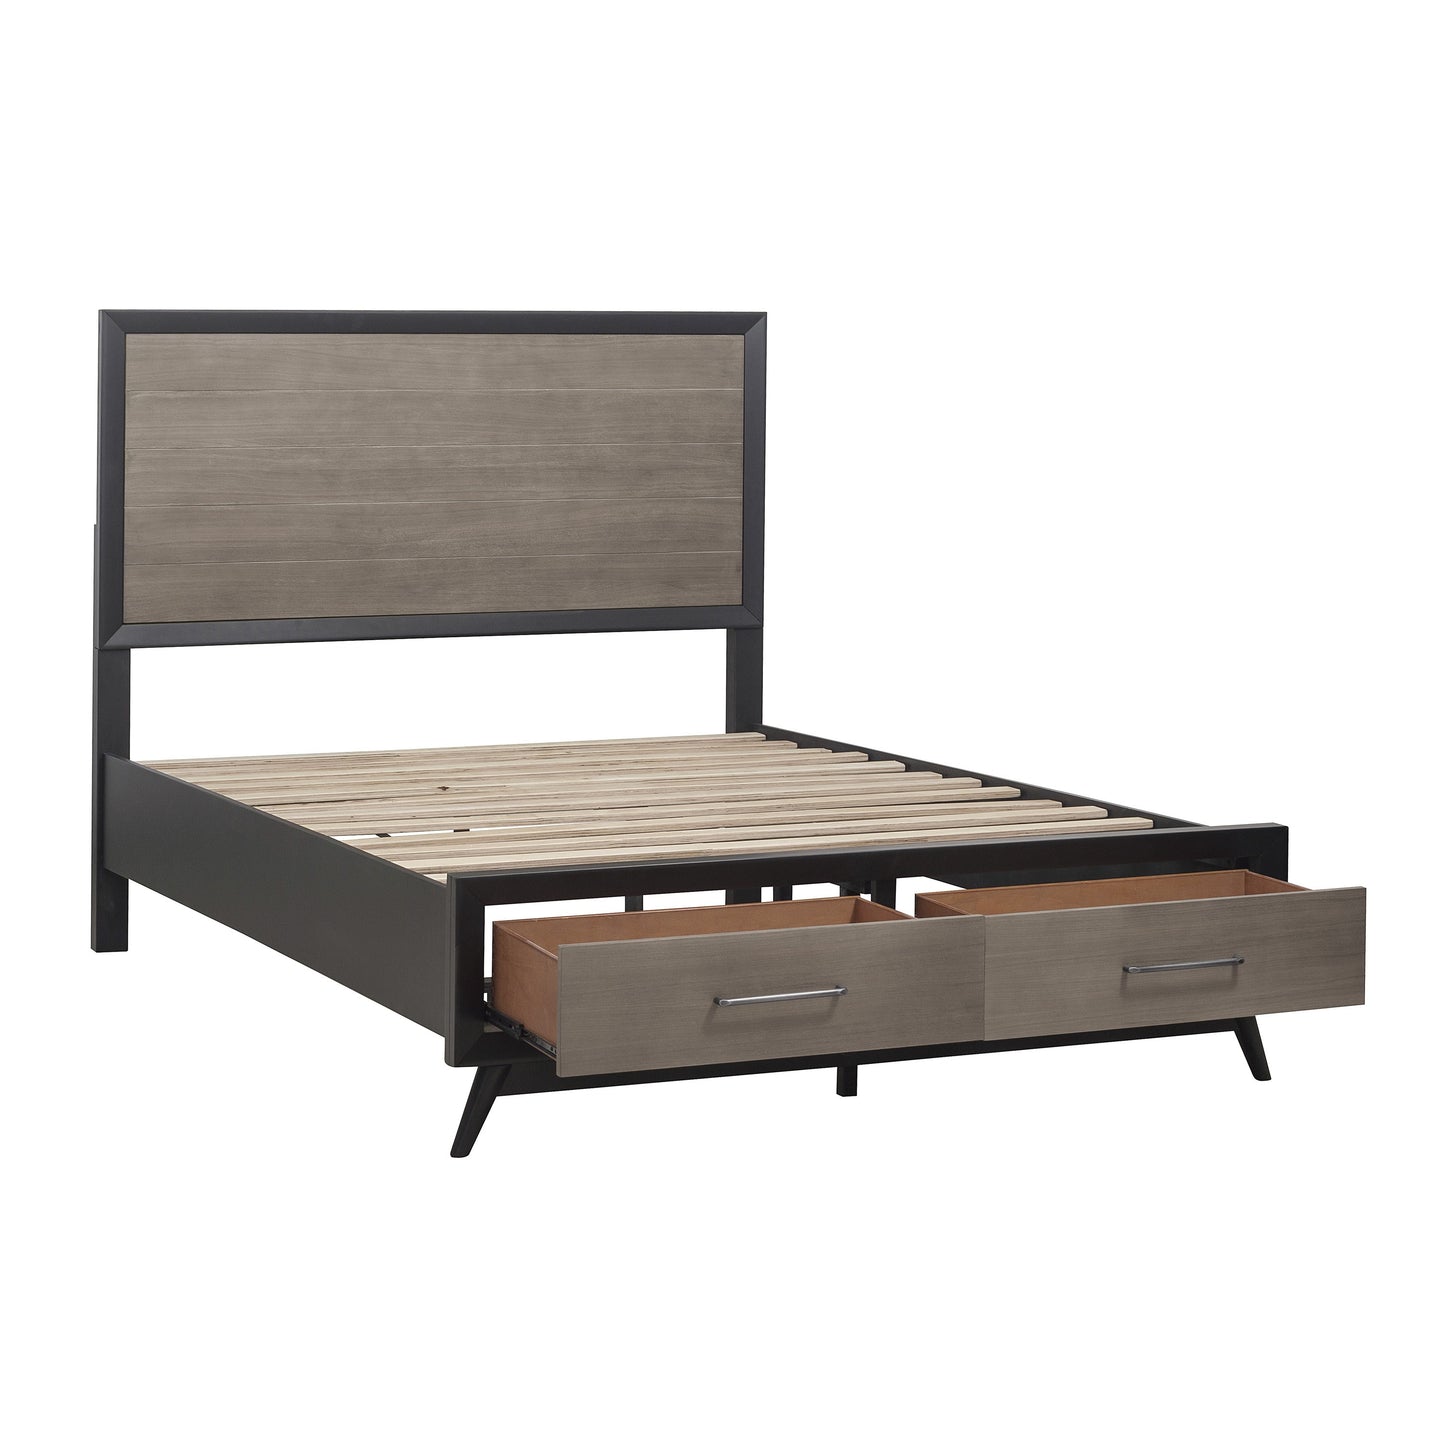 Regent Mid Century Modern 5PC Bedroom Set Full Storage Platform Bed, Dresser, Mirror, Nightstand, Chest in Grey